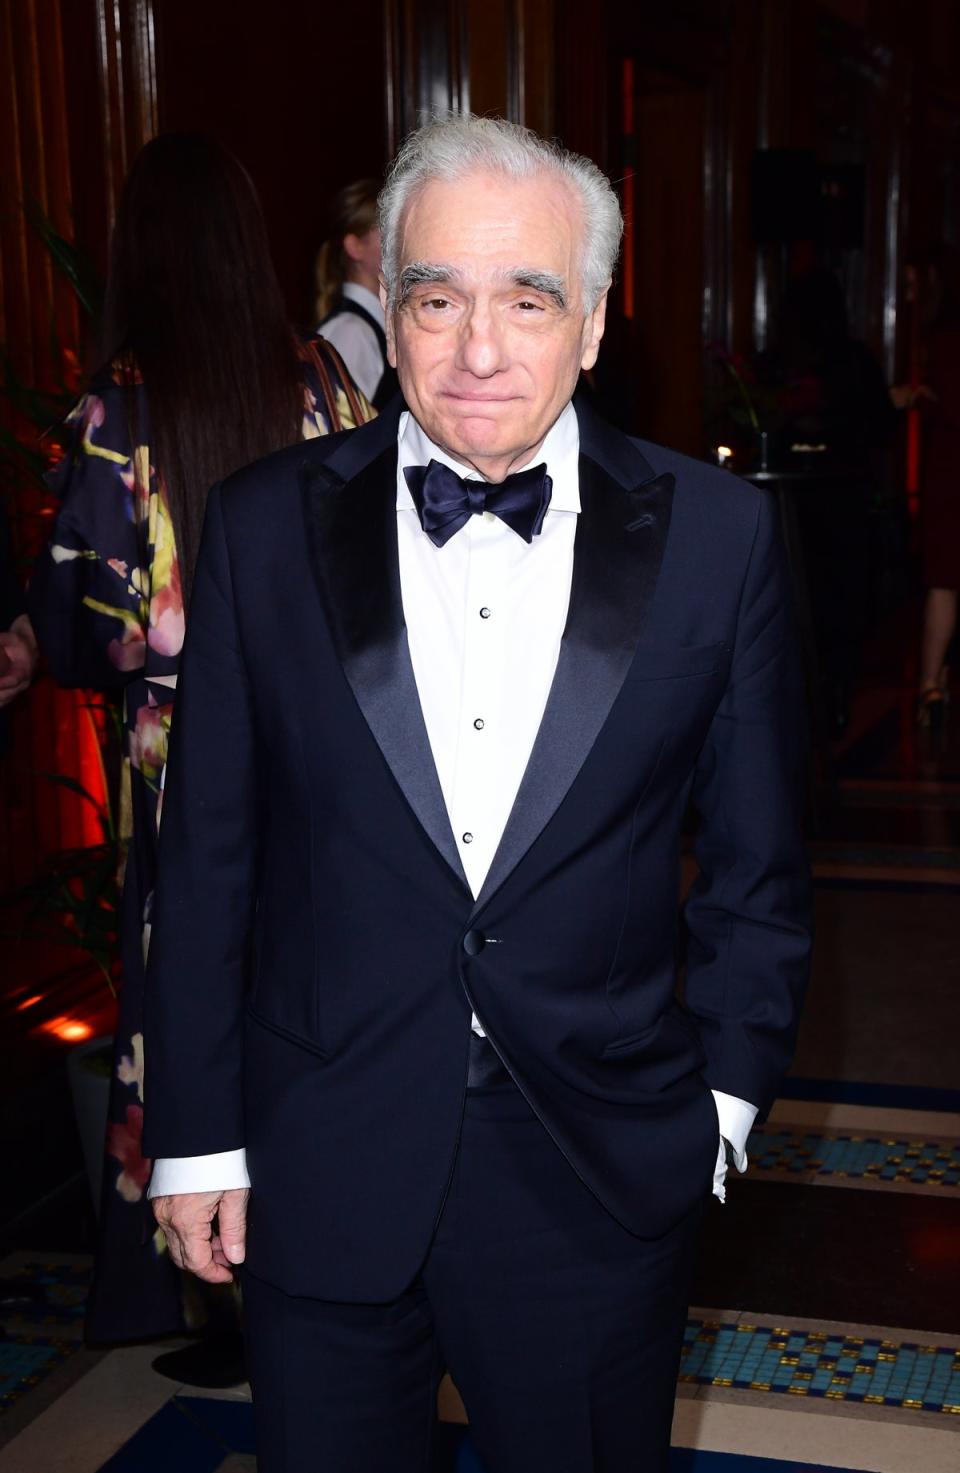 Martin Scorsese at the premiere for The Irishman, his longest film... so far (PA Archive)